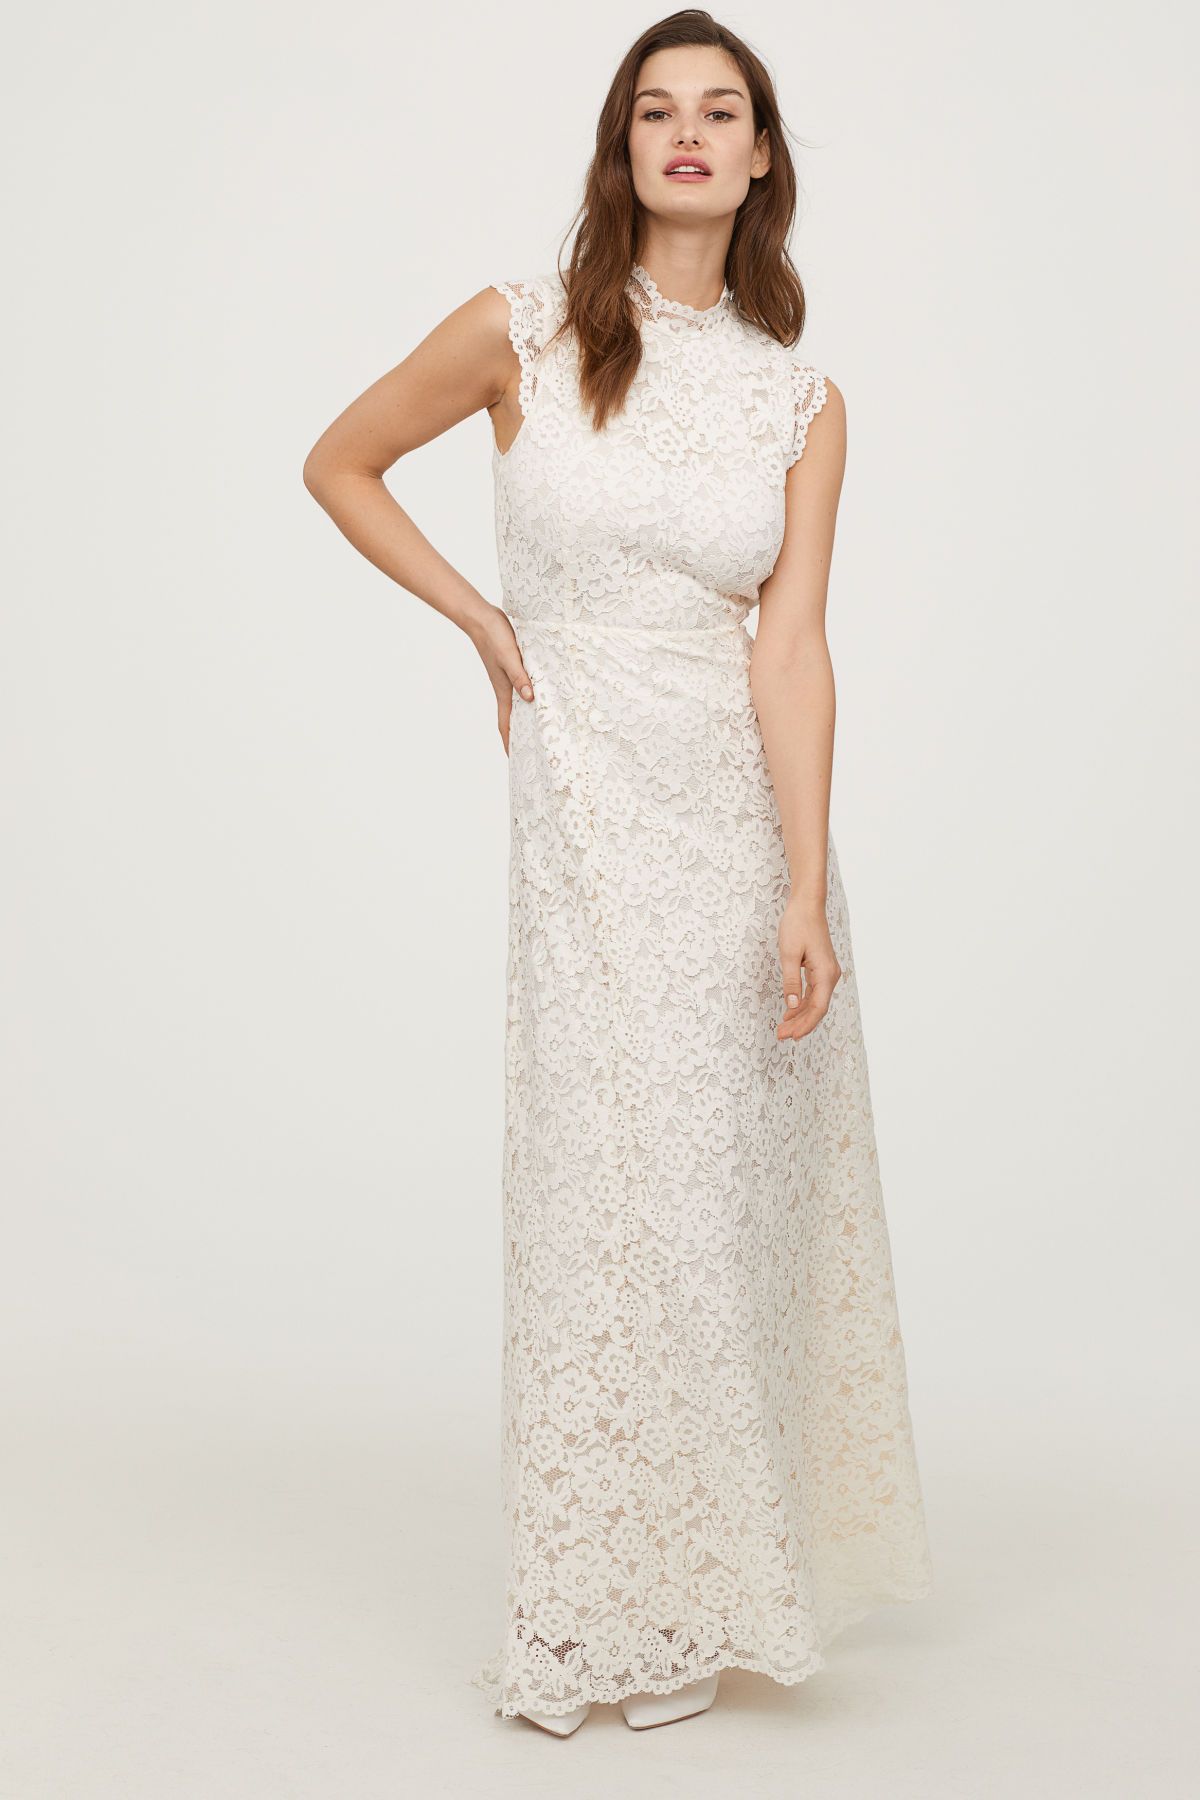 Vestido novia H&M H&M tiene un vestido de novia idéntico al de Pippa Middleton (en versión cost')